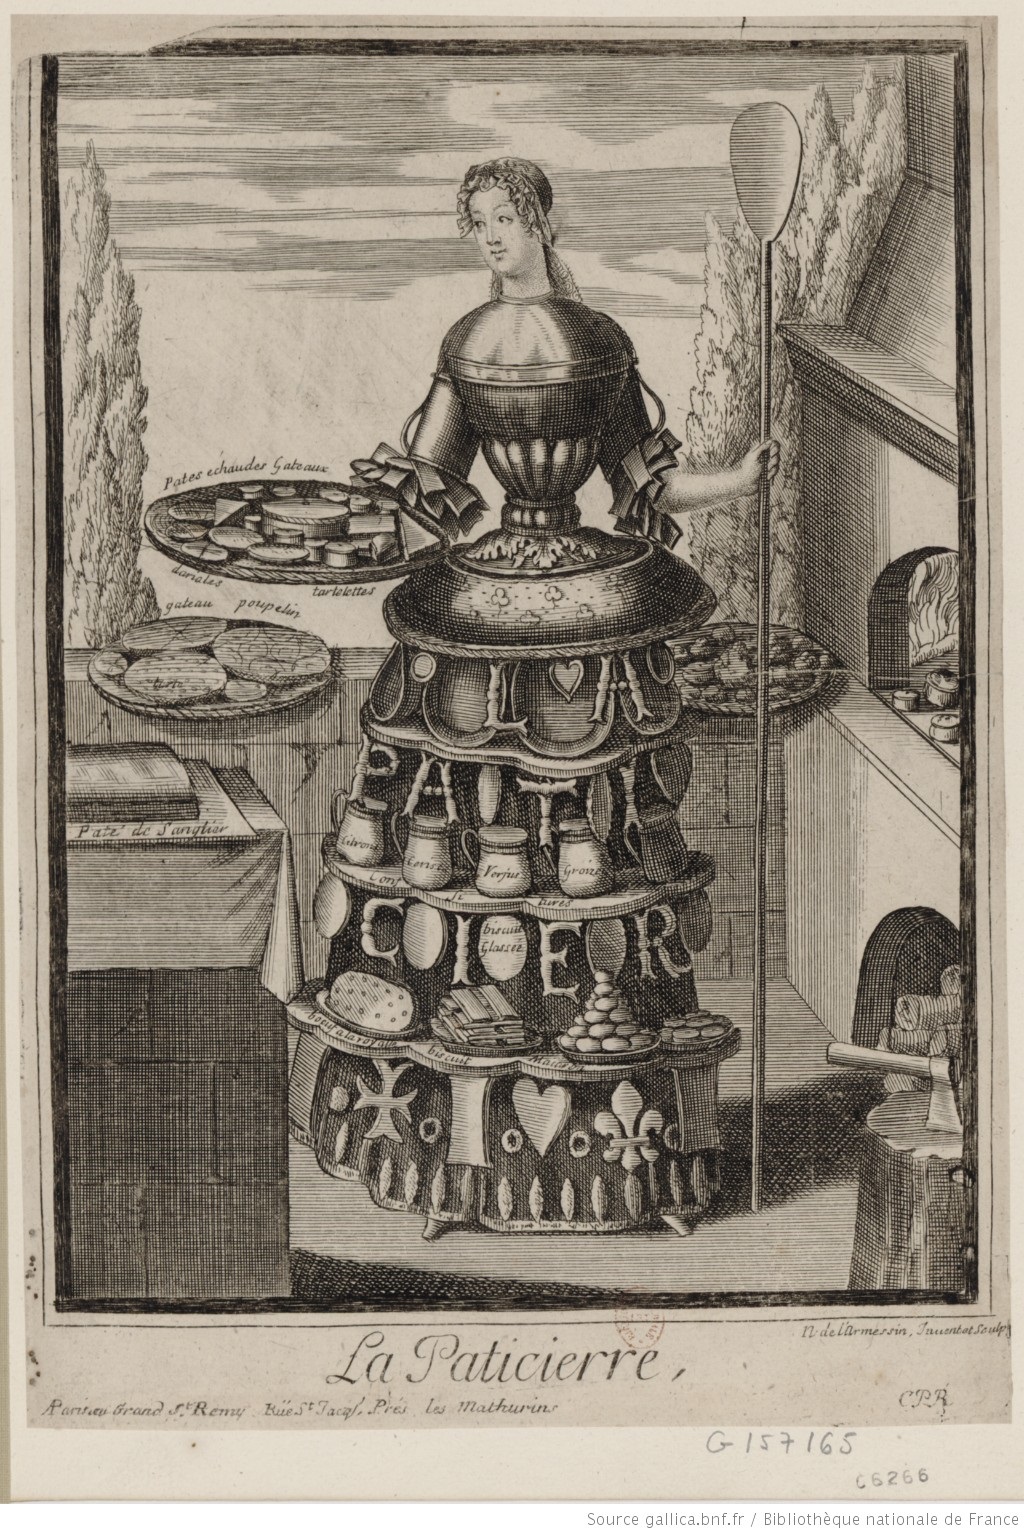 不論在古今中外，甜食似乎一直與女性形象緊密連結 。不過女性一般被限制在家庭中準備甜點，專業的女甜點師直到現代才多了起來。圖中是17世紀末由版畫師Nicolas de L’Armessin繪製的「女糕餅